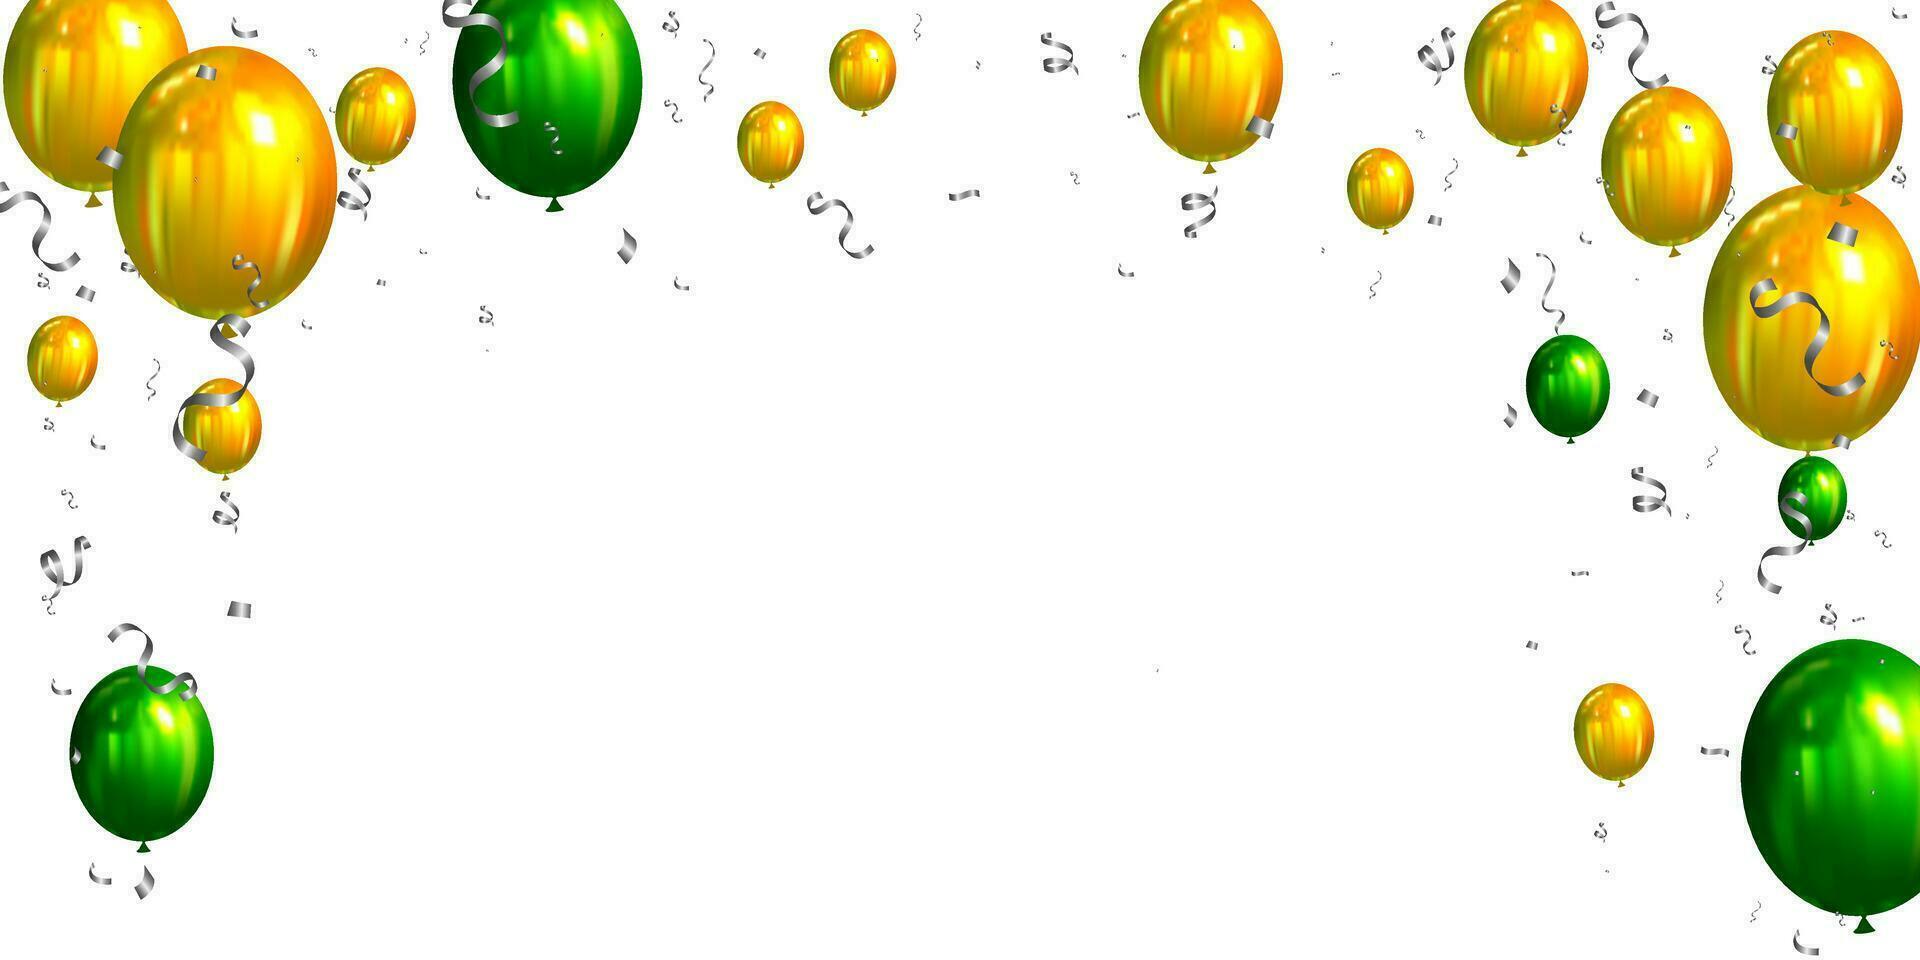 grön och gul ballonger med konfetti på vit bakgrund. vektor illustration.